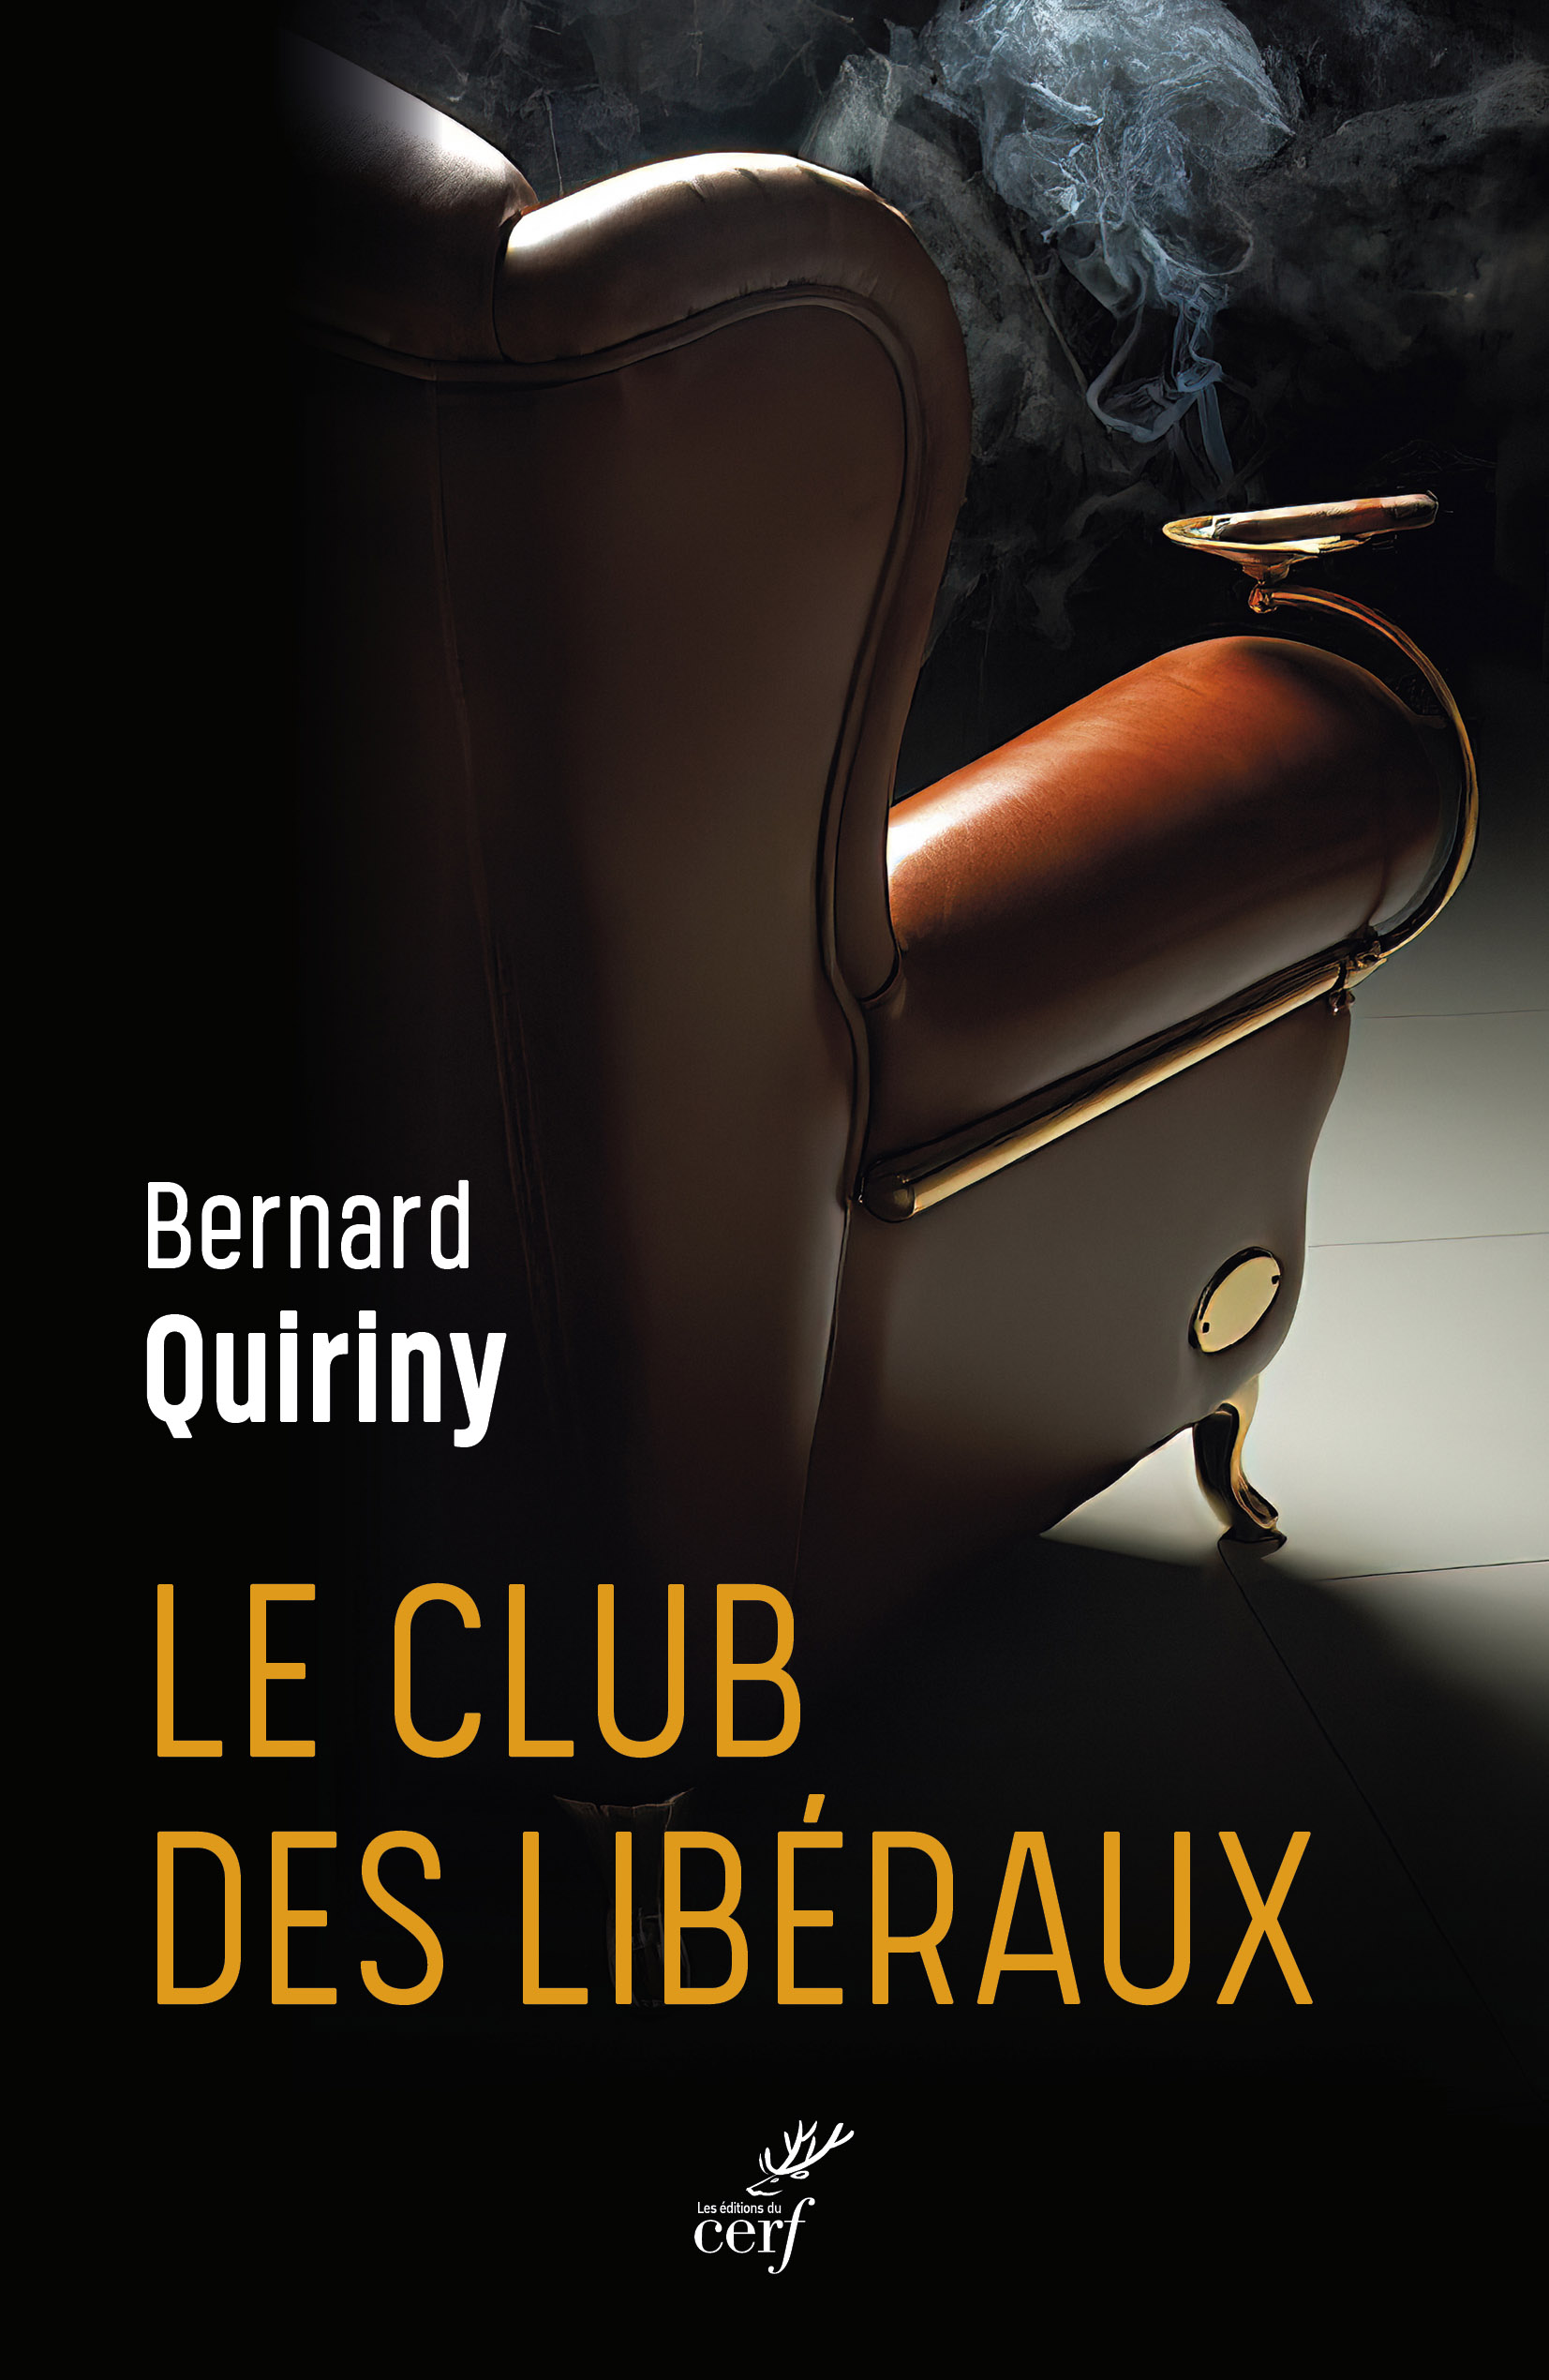 Bernard Quiriny : "Le club des libéraux" 